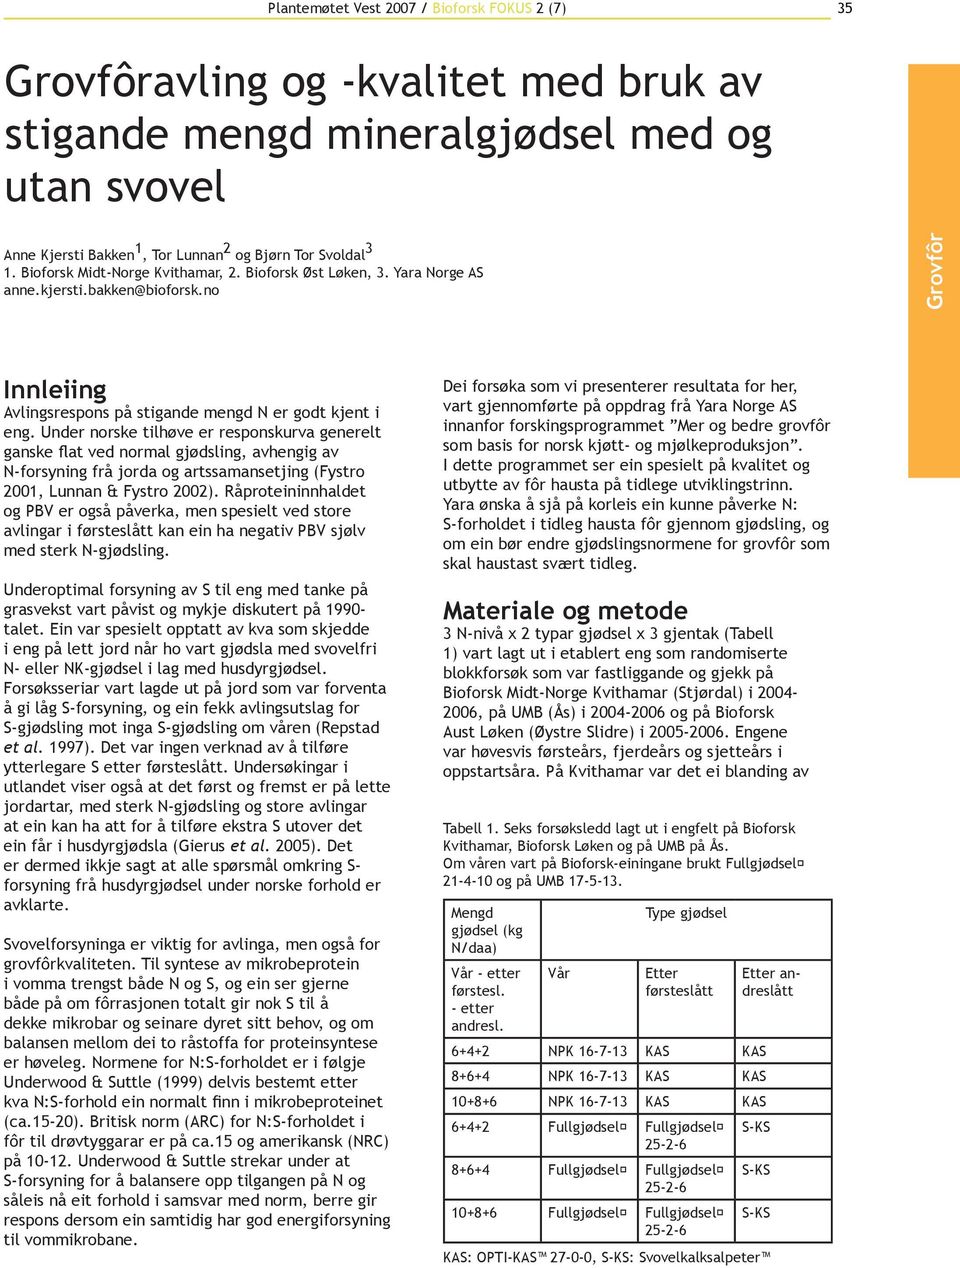 Under norske tilhøve er responskurva generelt ganske flat ved normal gjødsling, avhengig av N-forsyning frå jorda og artssamansetjing (Fystro 2001, Lunnan & Fystro 2002).